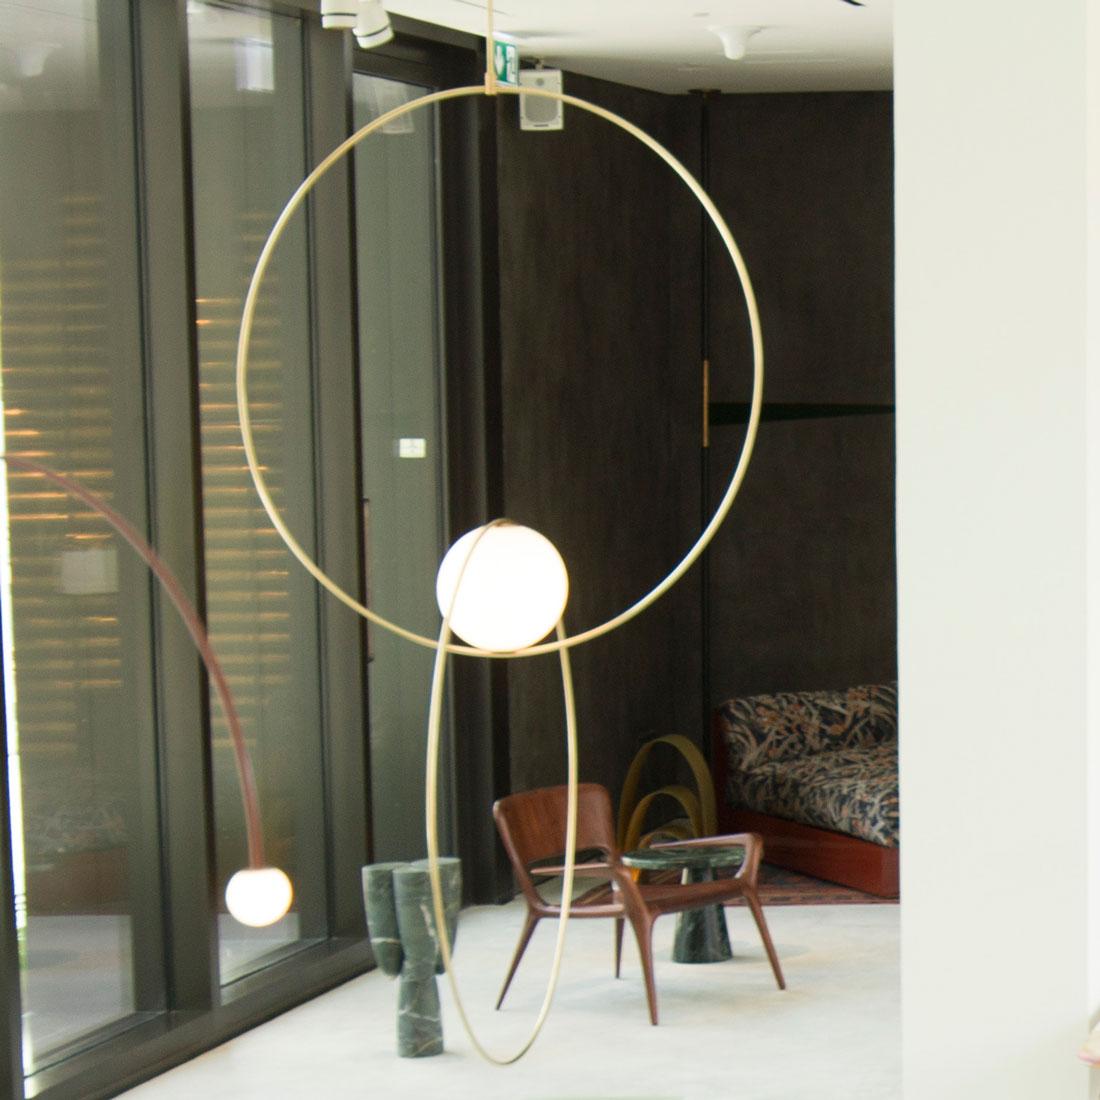 Collection Loop de Michael Anastassiades : équilibre, couleur et formes minimales. La suspension à double boucle ajoute une simplicité élémentaire à tout espace, parfaite dans ses symétries architecturales.